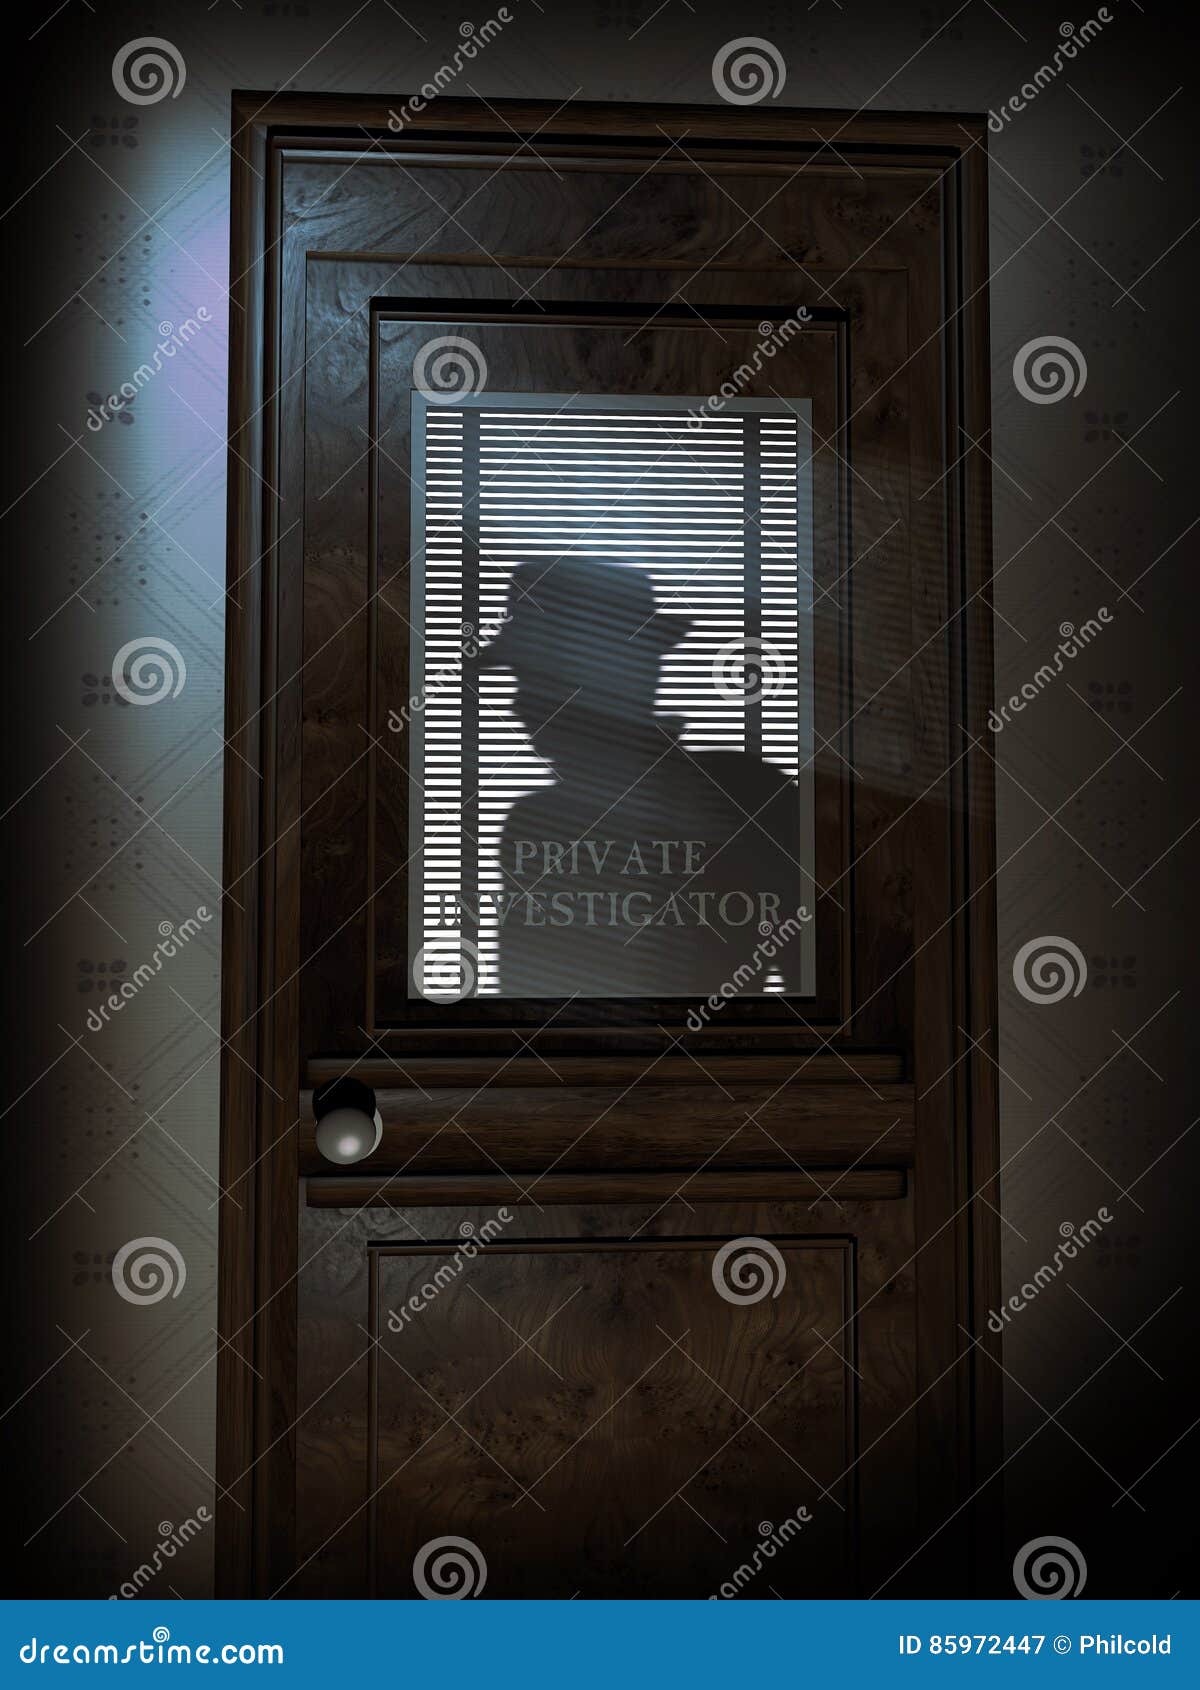 private investigator`s office